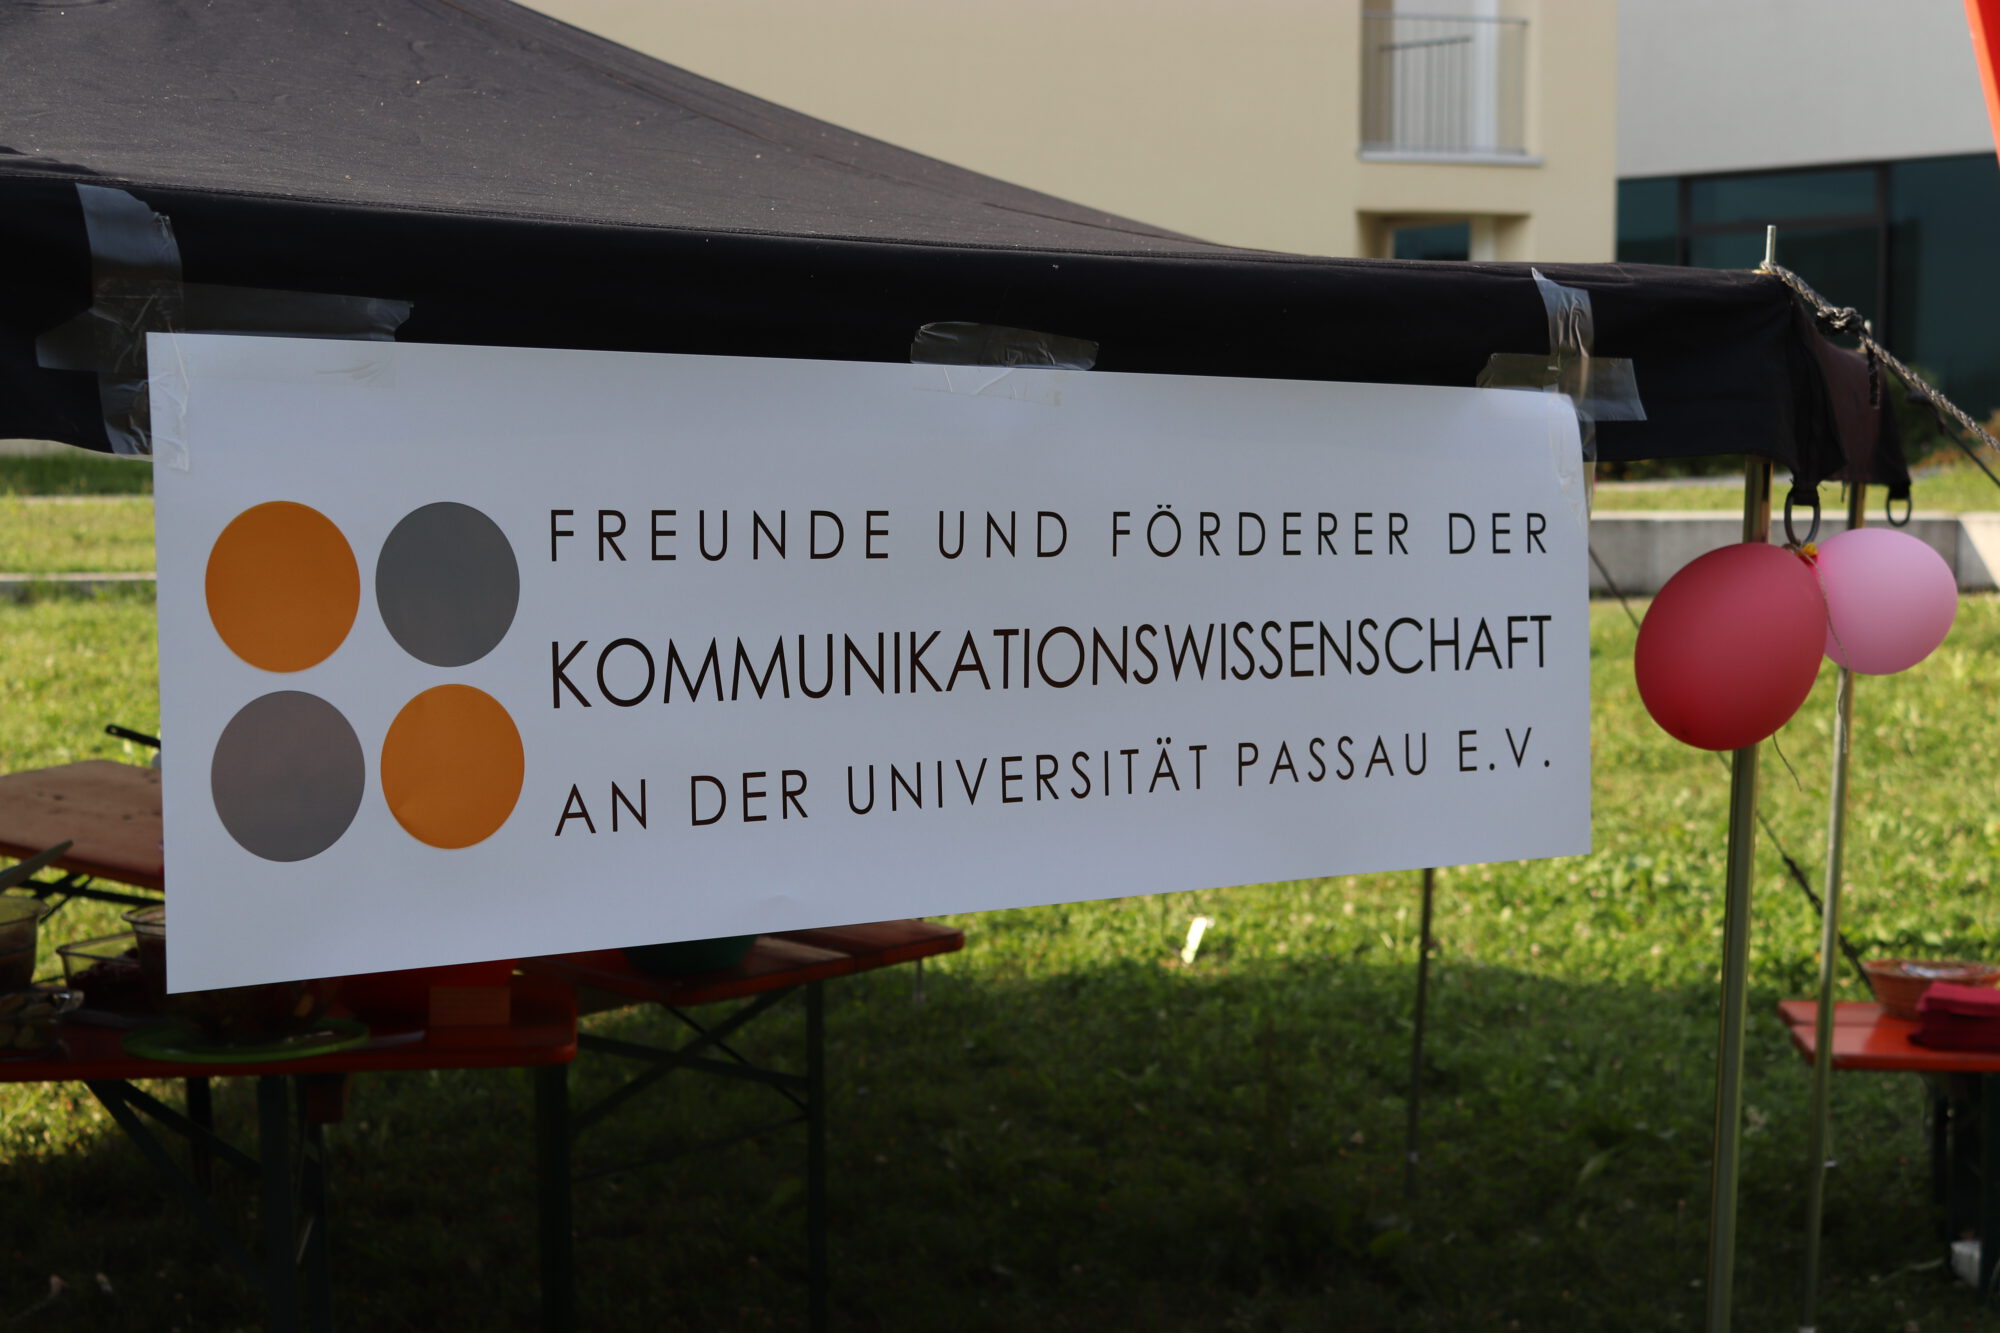 Verein der Freunde und Förderer der Kommunikationswissenschaft an der Universität Passau e.V.